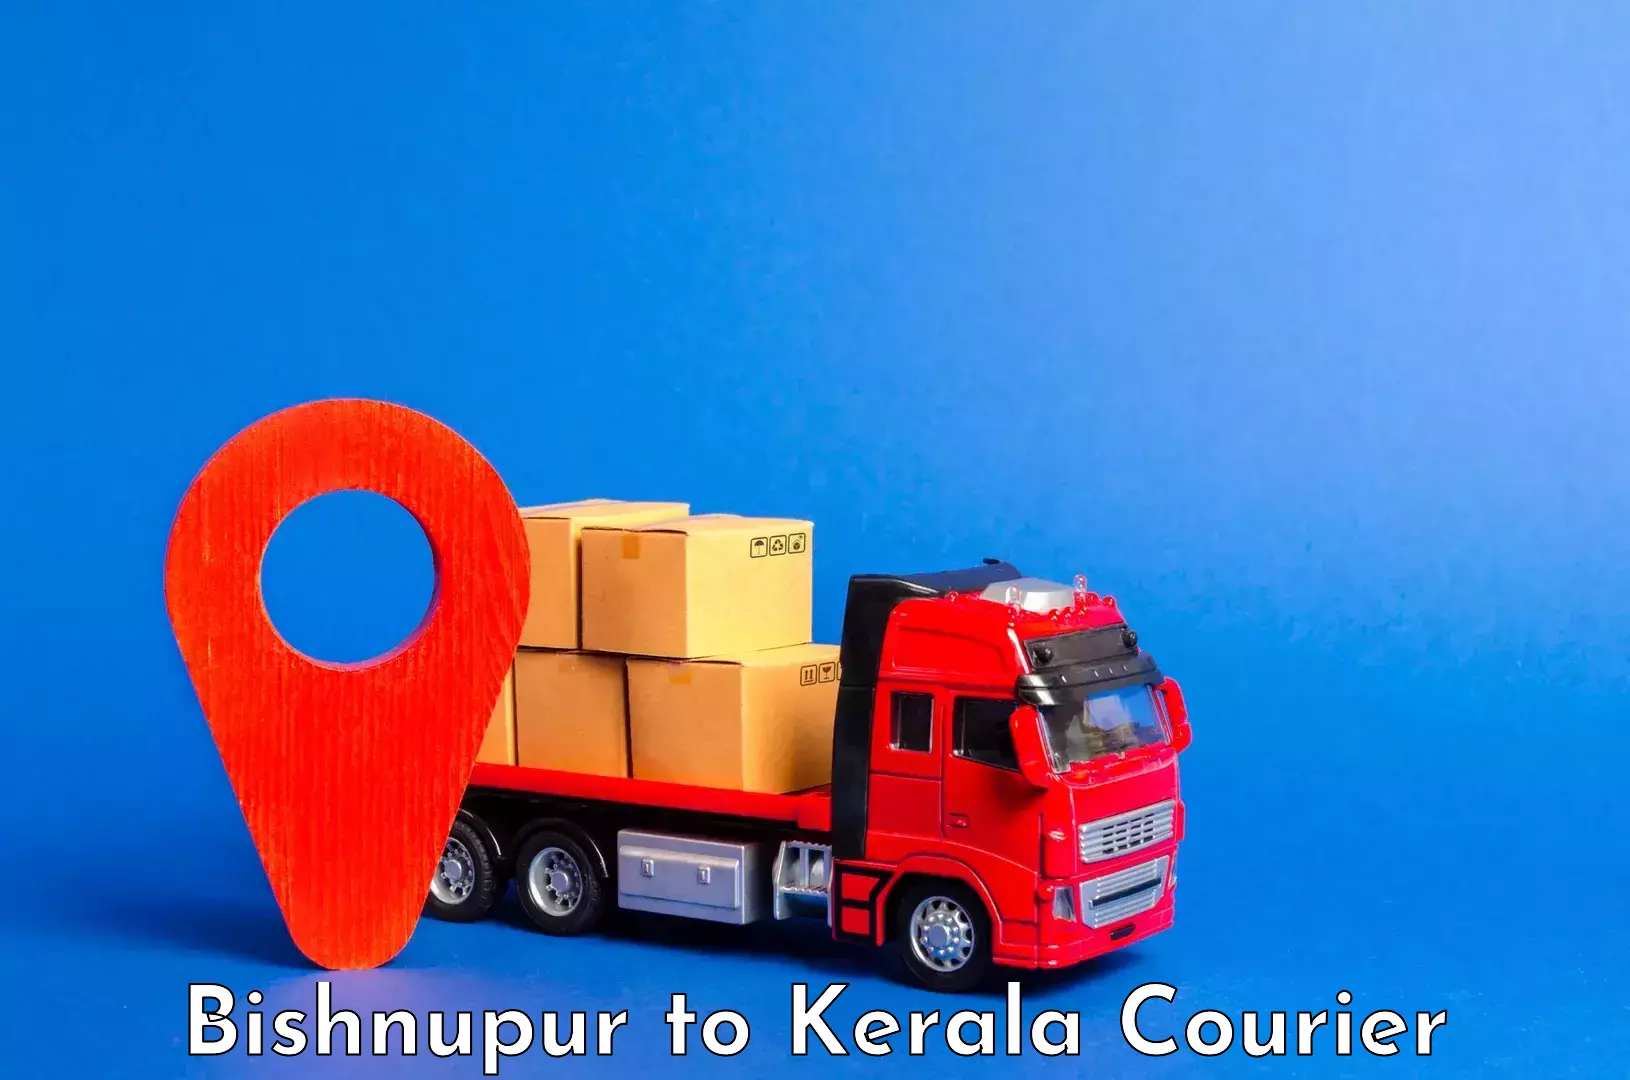 Nationwide luggage courier Bishnupur to Kalpetta